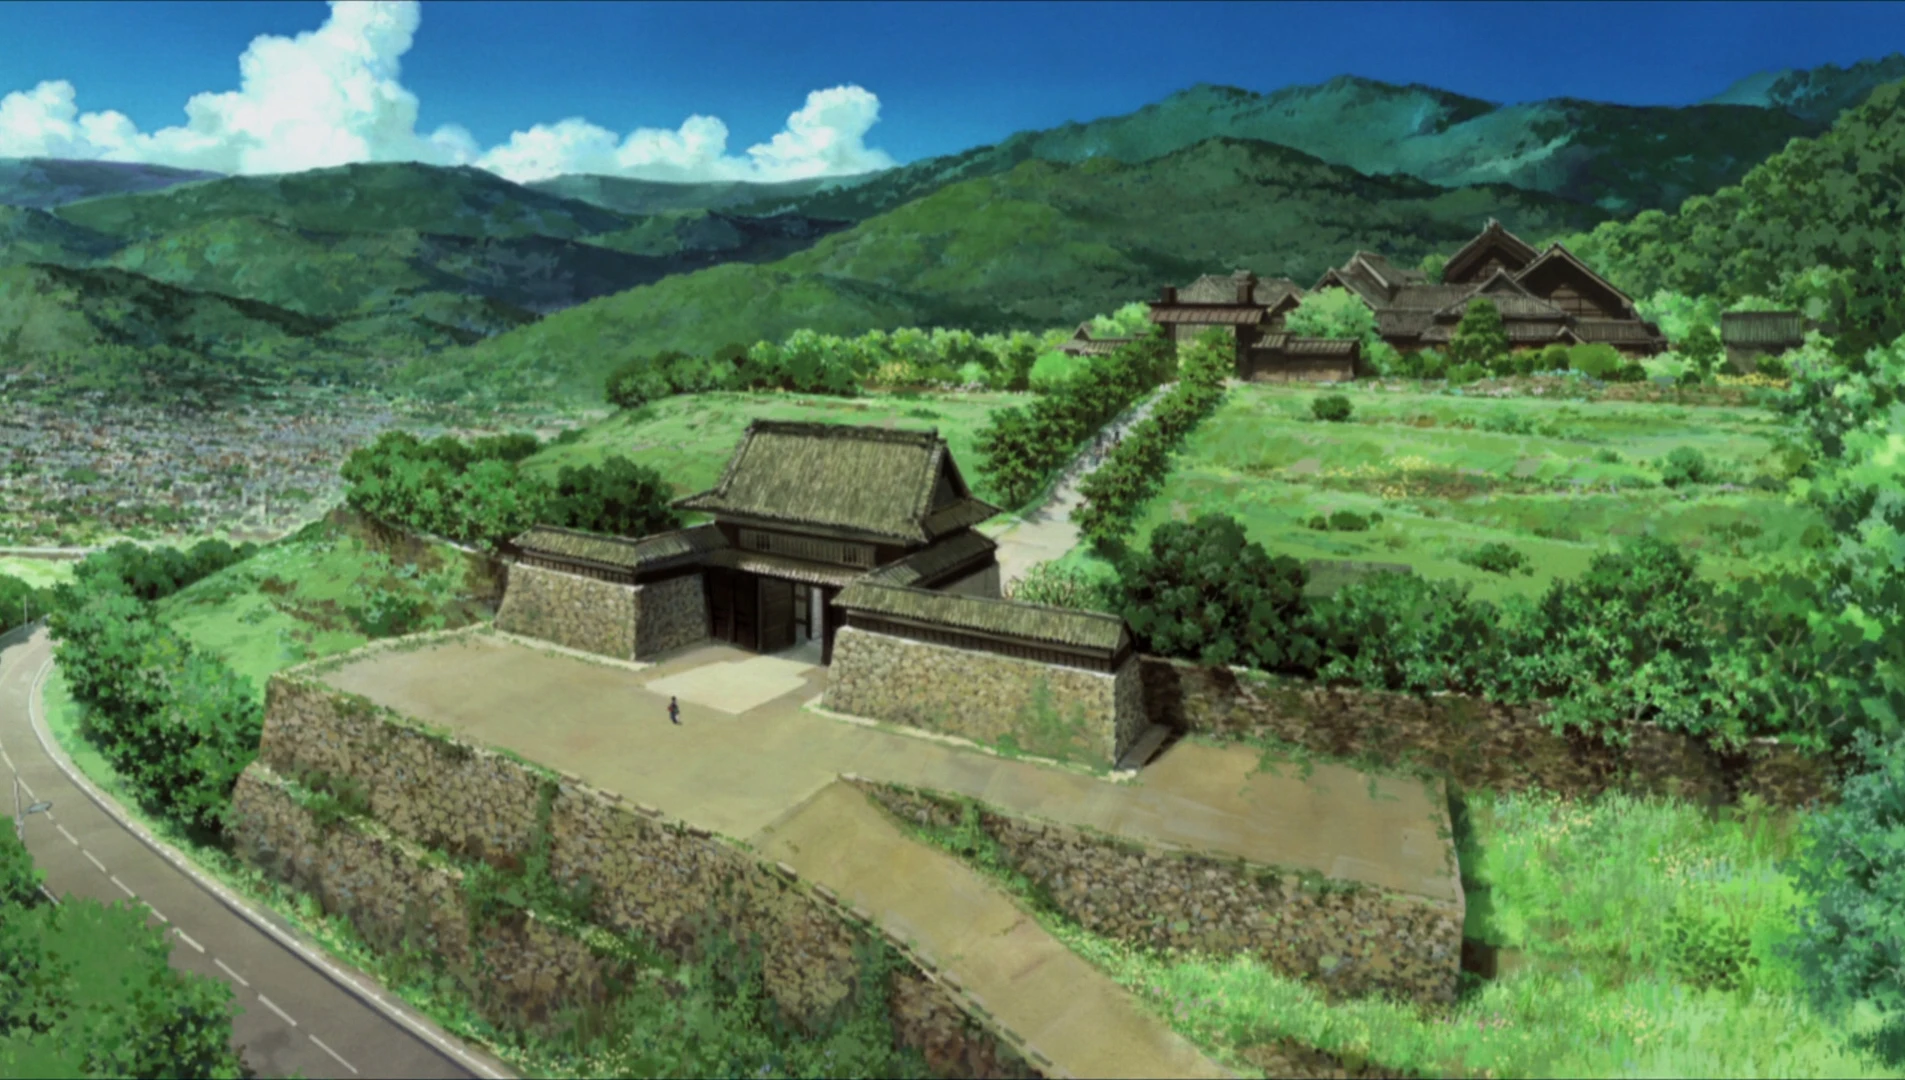 动画中阵内家的城邸与上田城的造型非常相似